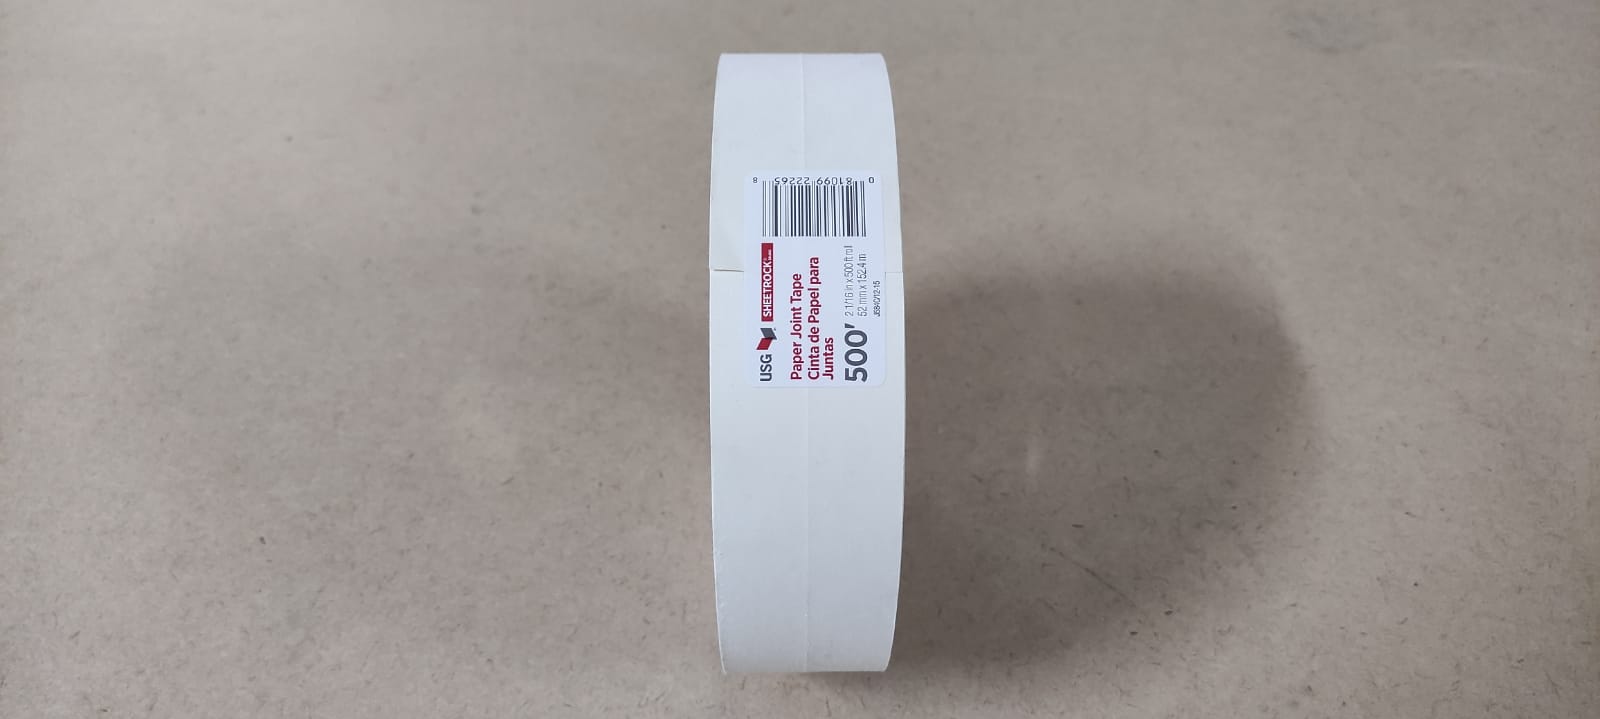 Соединительная бумажная лента для заделки швов 52 мм х 152,4 м Шитрок / Sheetrock